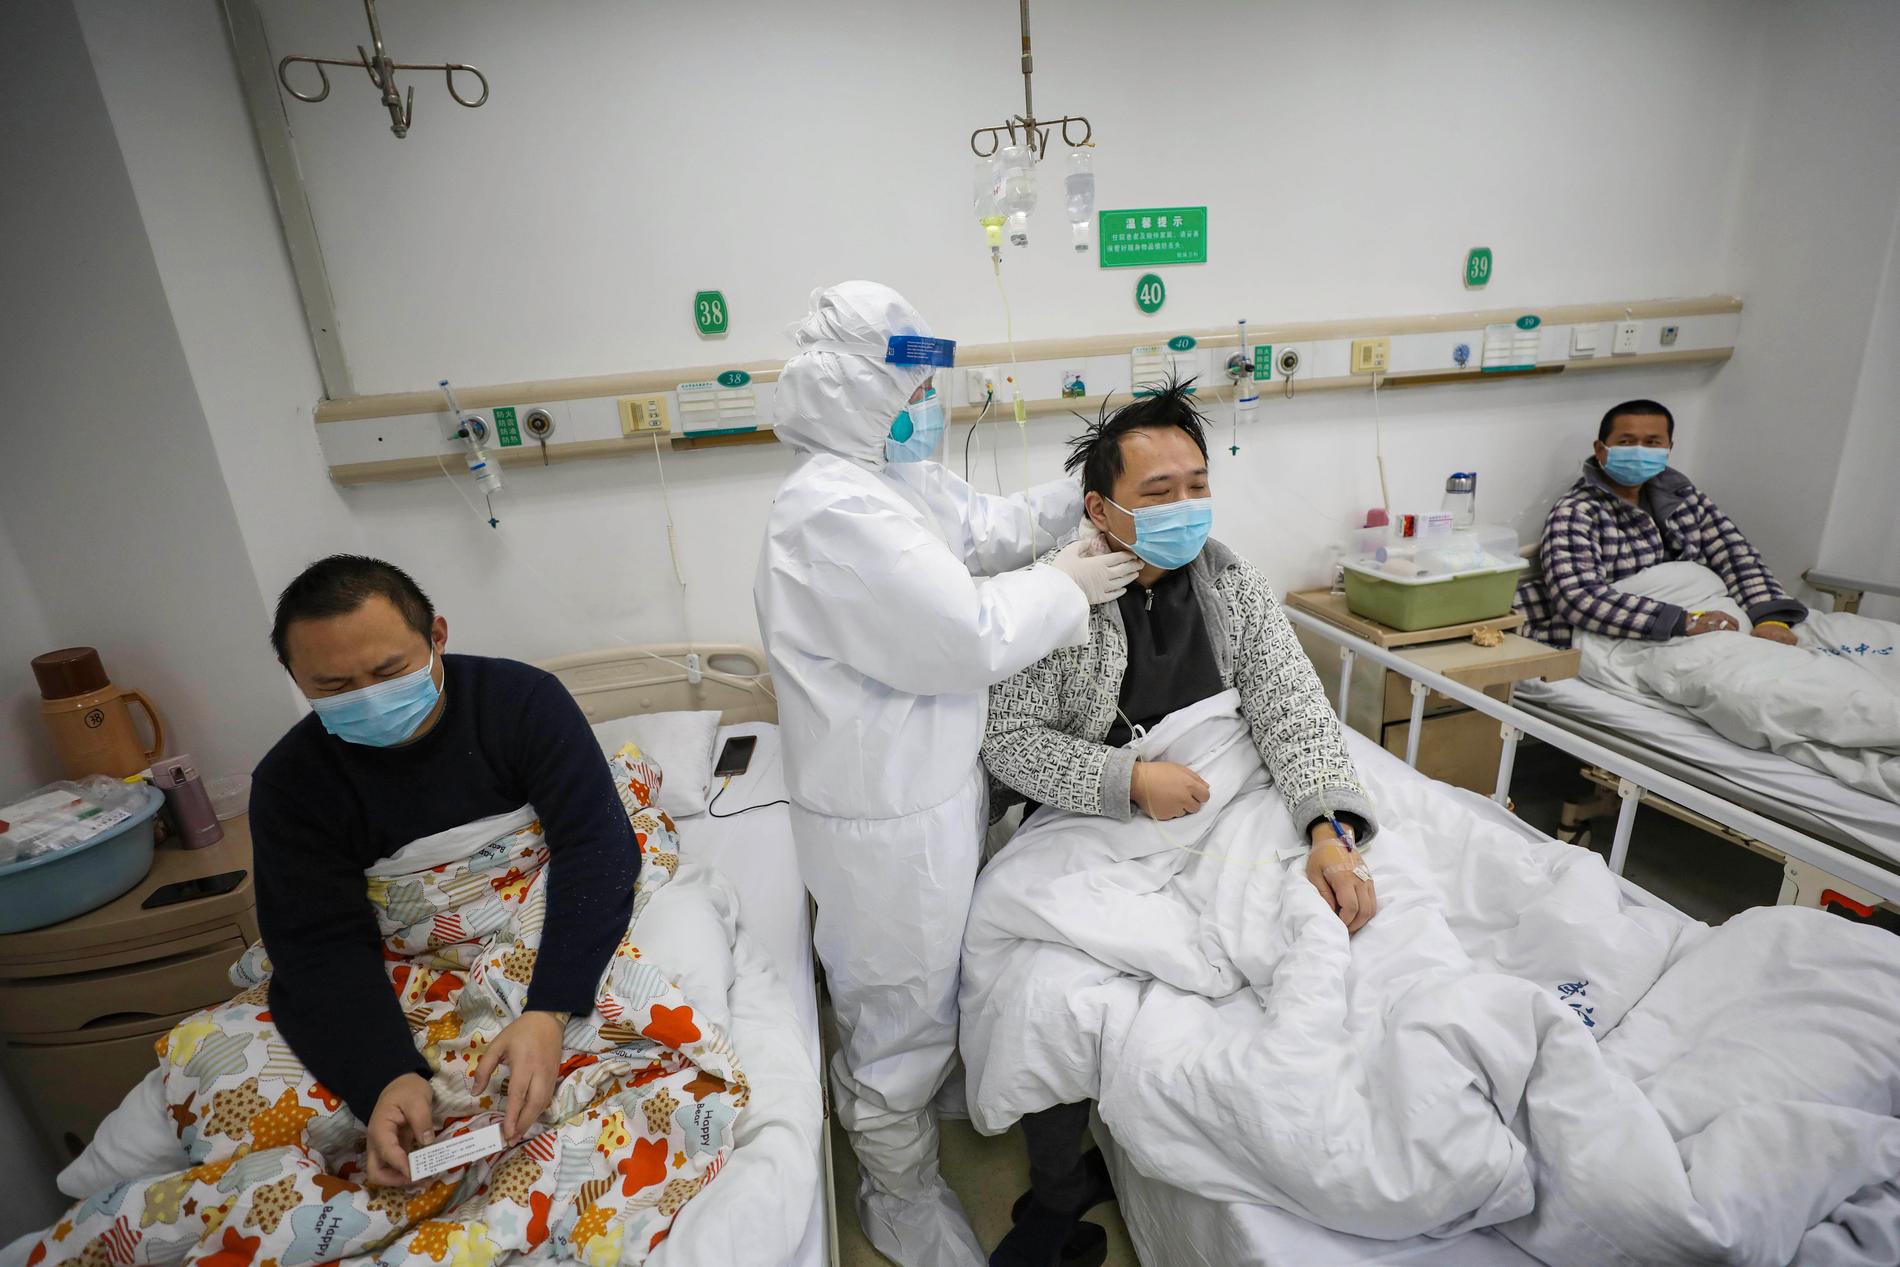 Patienter undersöks på ett sjukhus i Jinyintan under början av covidpandemin.